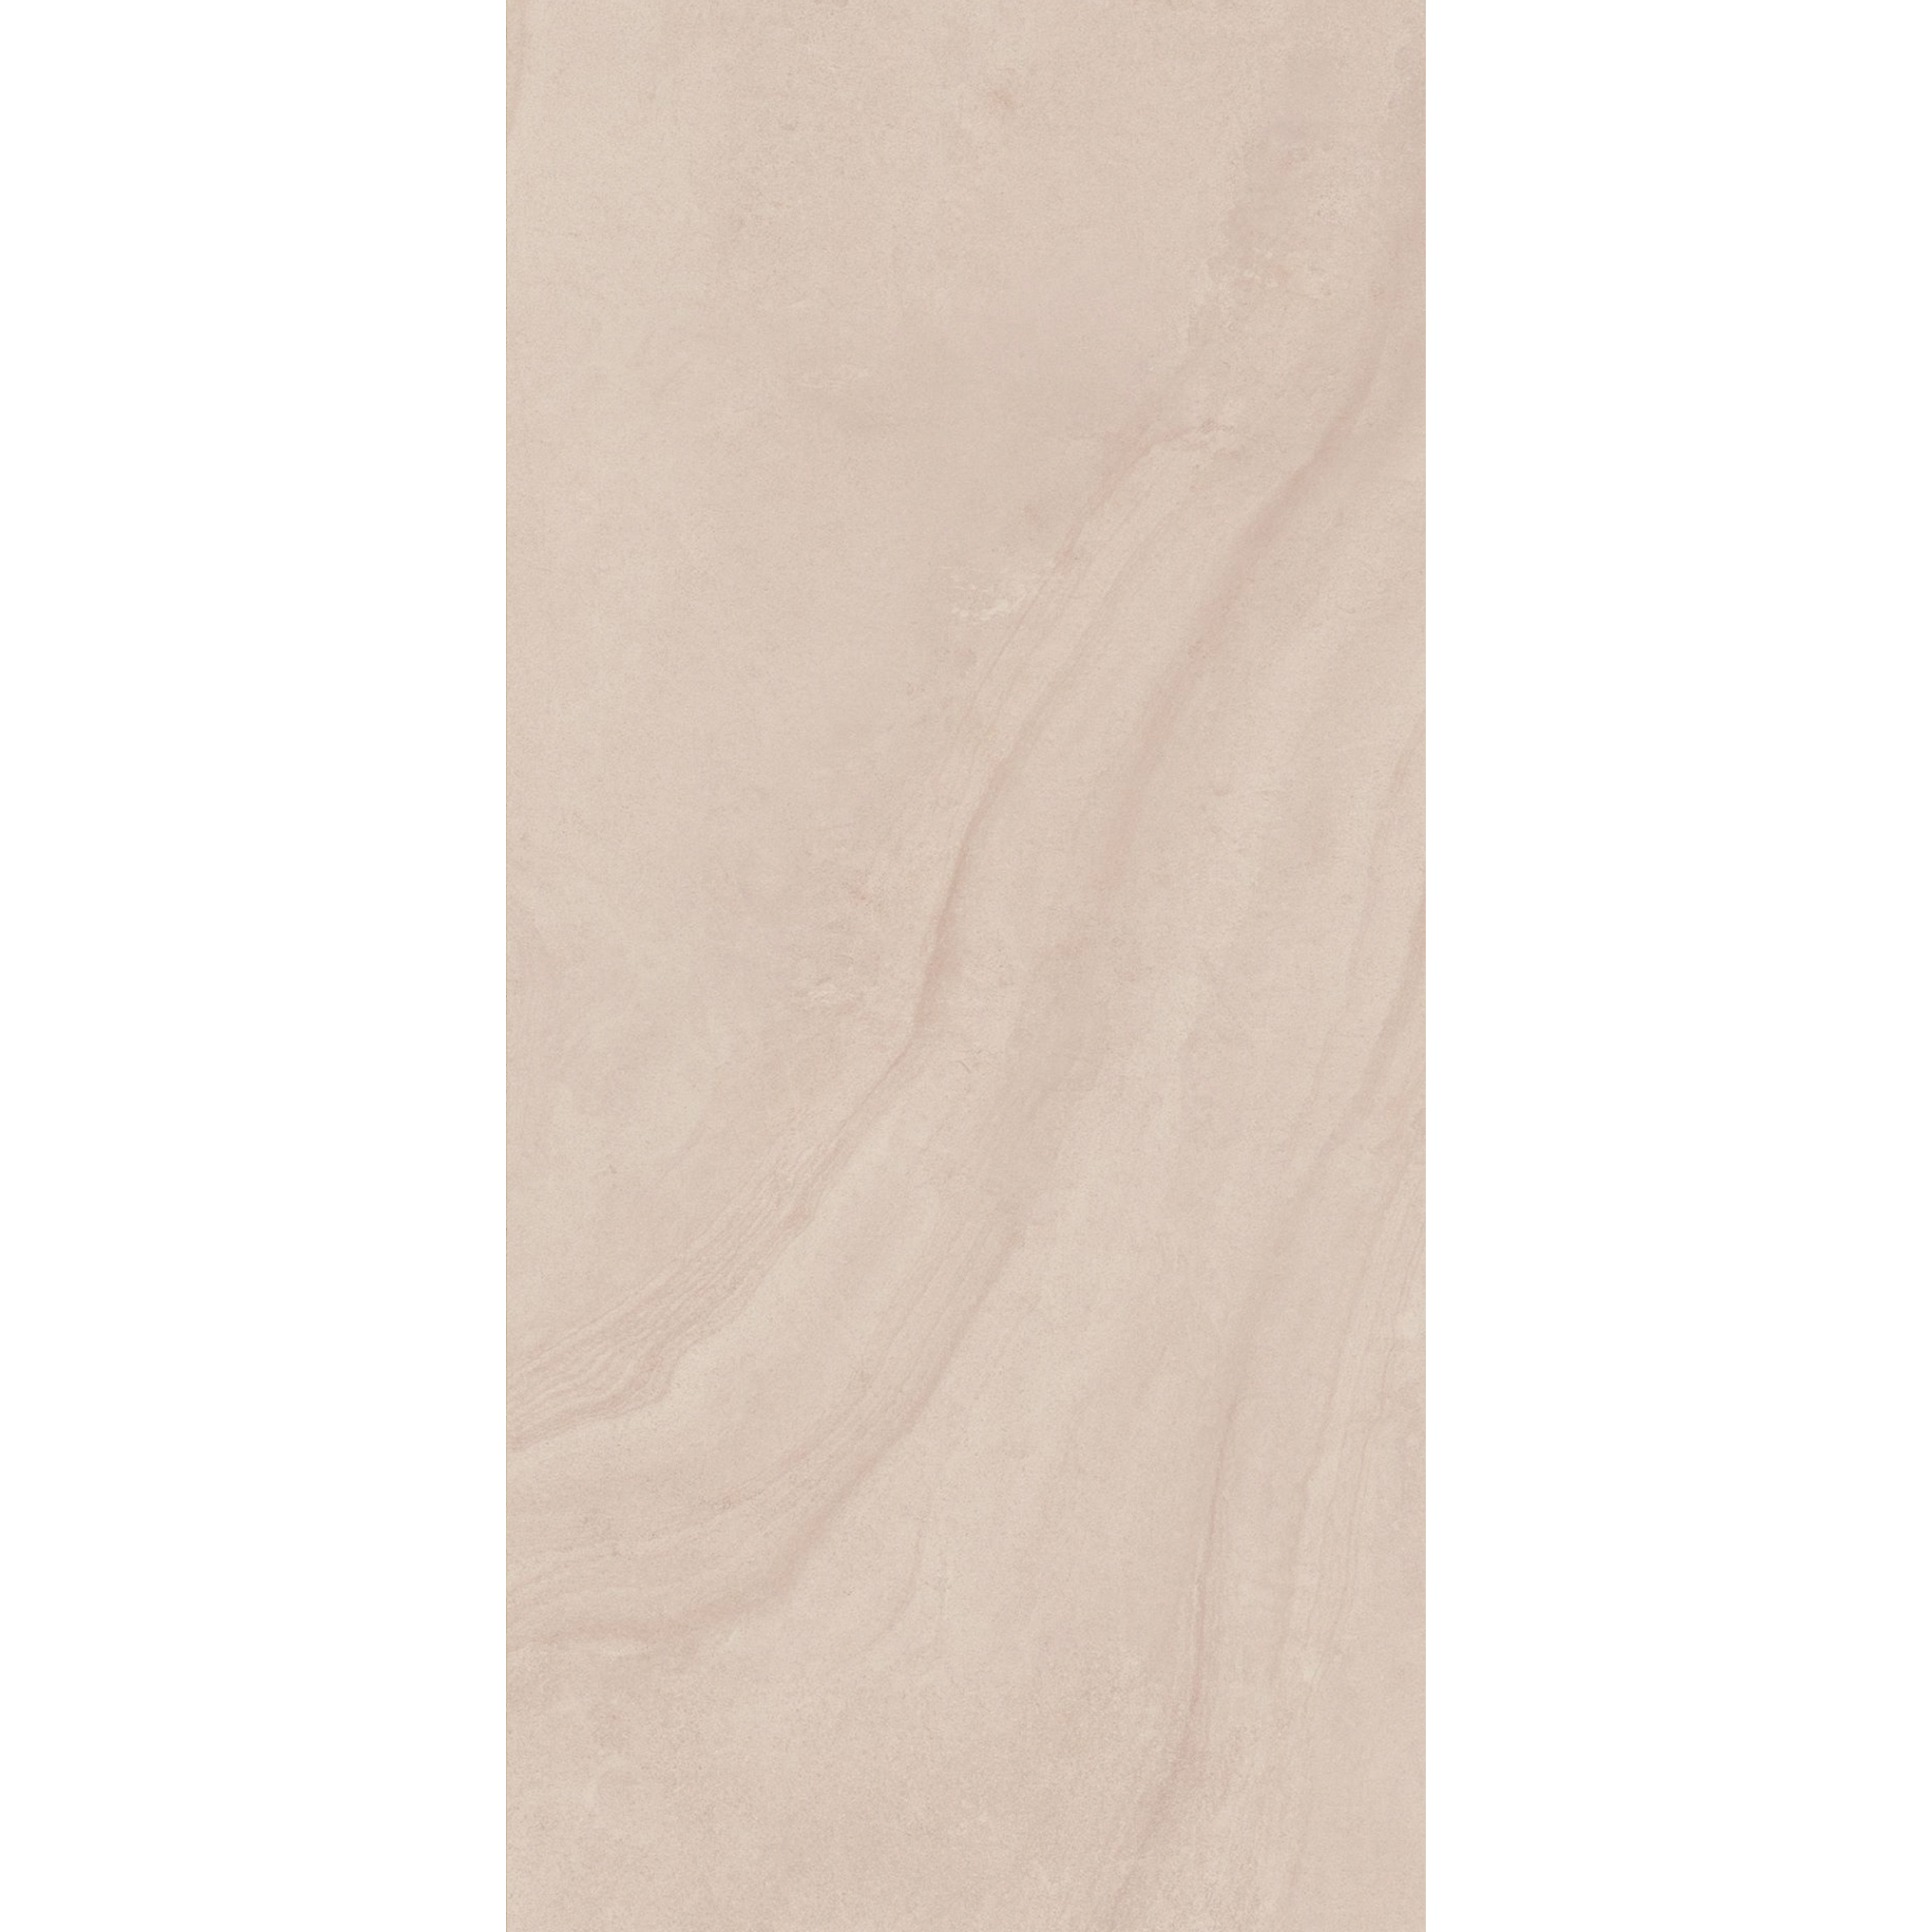 Duschrückwand 'DecoDesign' sandsteinfarben 100 x 210 cm + product picture